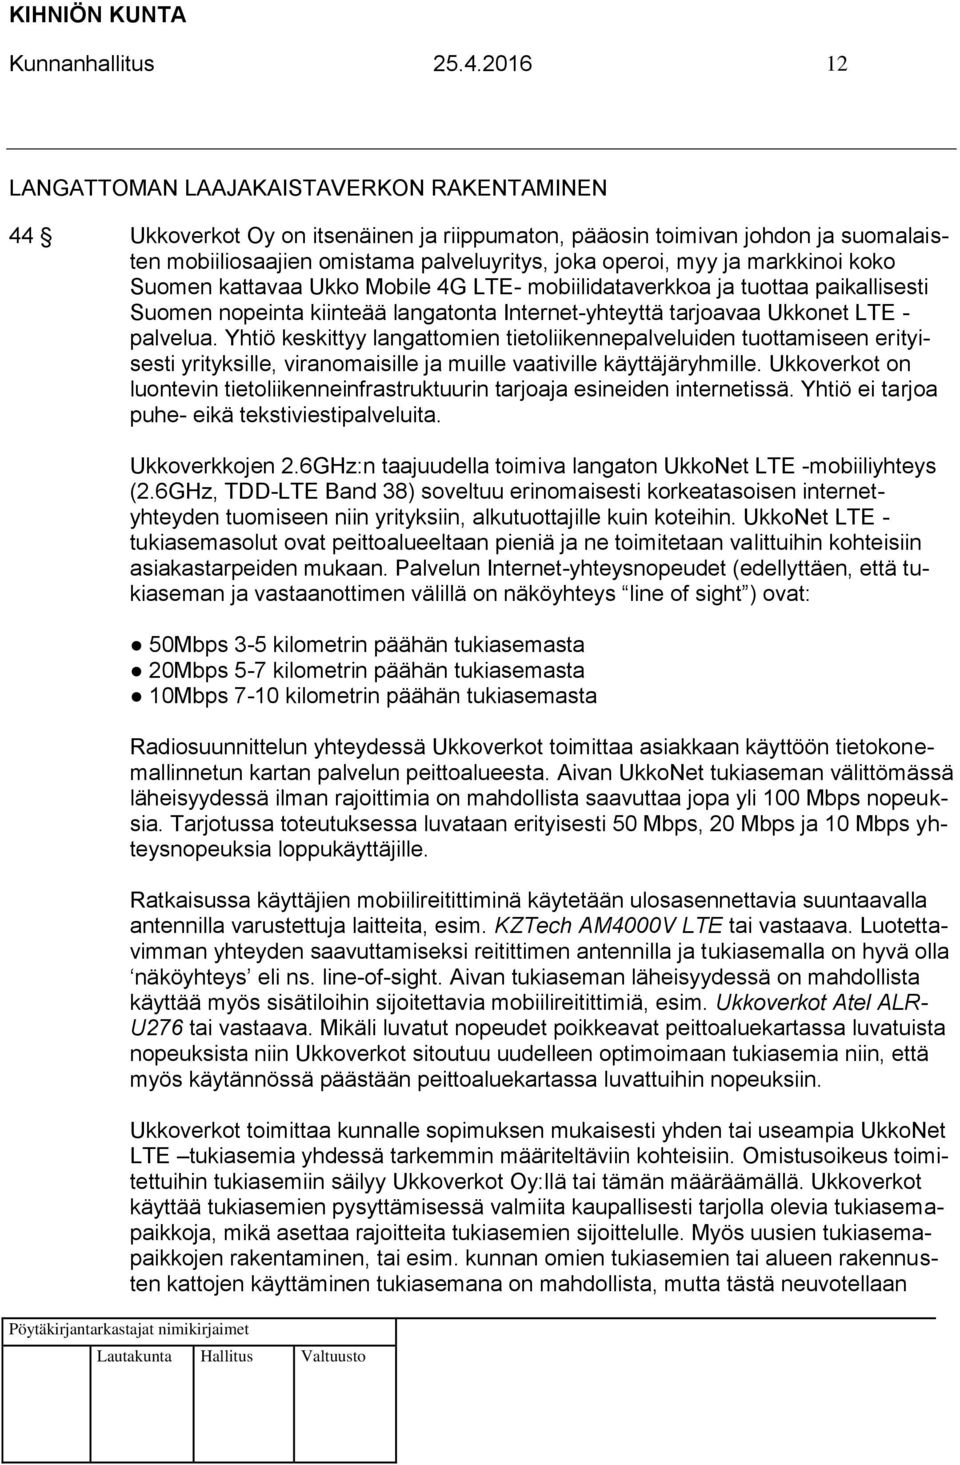 markkinoi koko Suomen kattavaa Ukko Mobile 4G LTE- mobiilidataverkkoa ja tuottaa paikallisesti Suomen nopeinta kiinteää langatonta Internet-yhteyttä tarjoavaa Ukkonet LTE - palvelua.